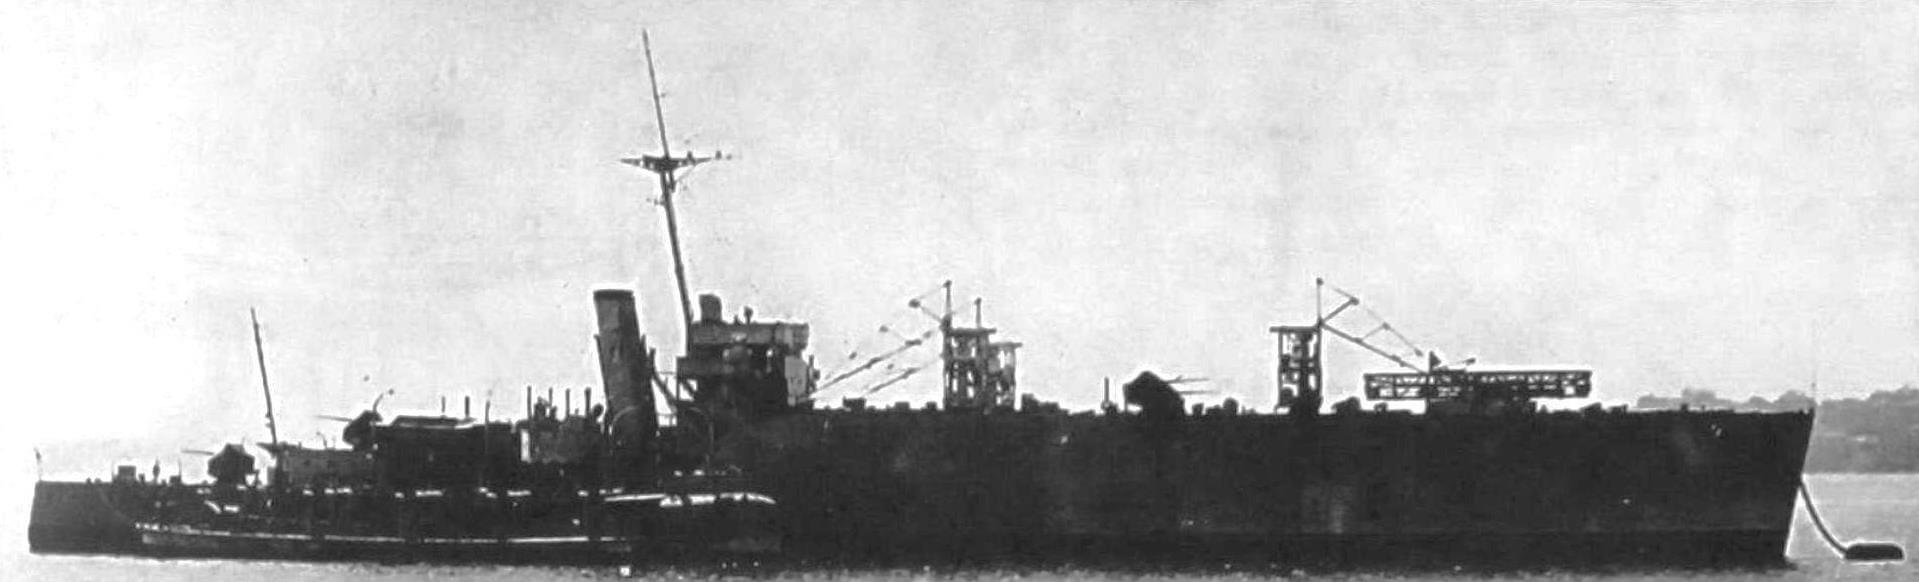 «Альбатрос» в 1936 году с установленной катапультой